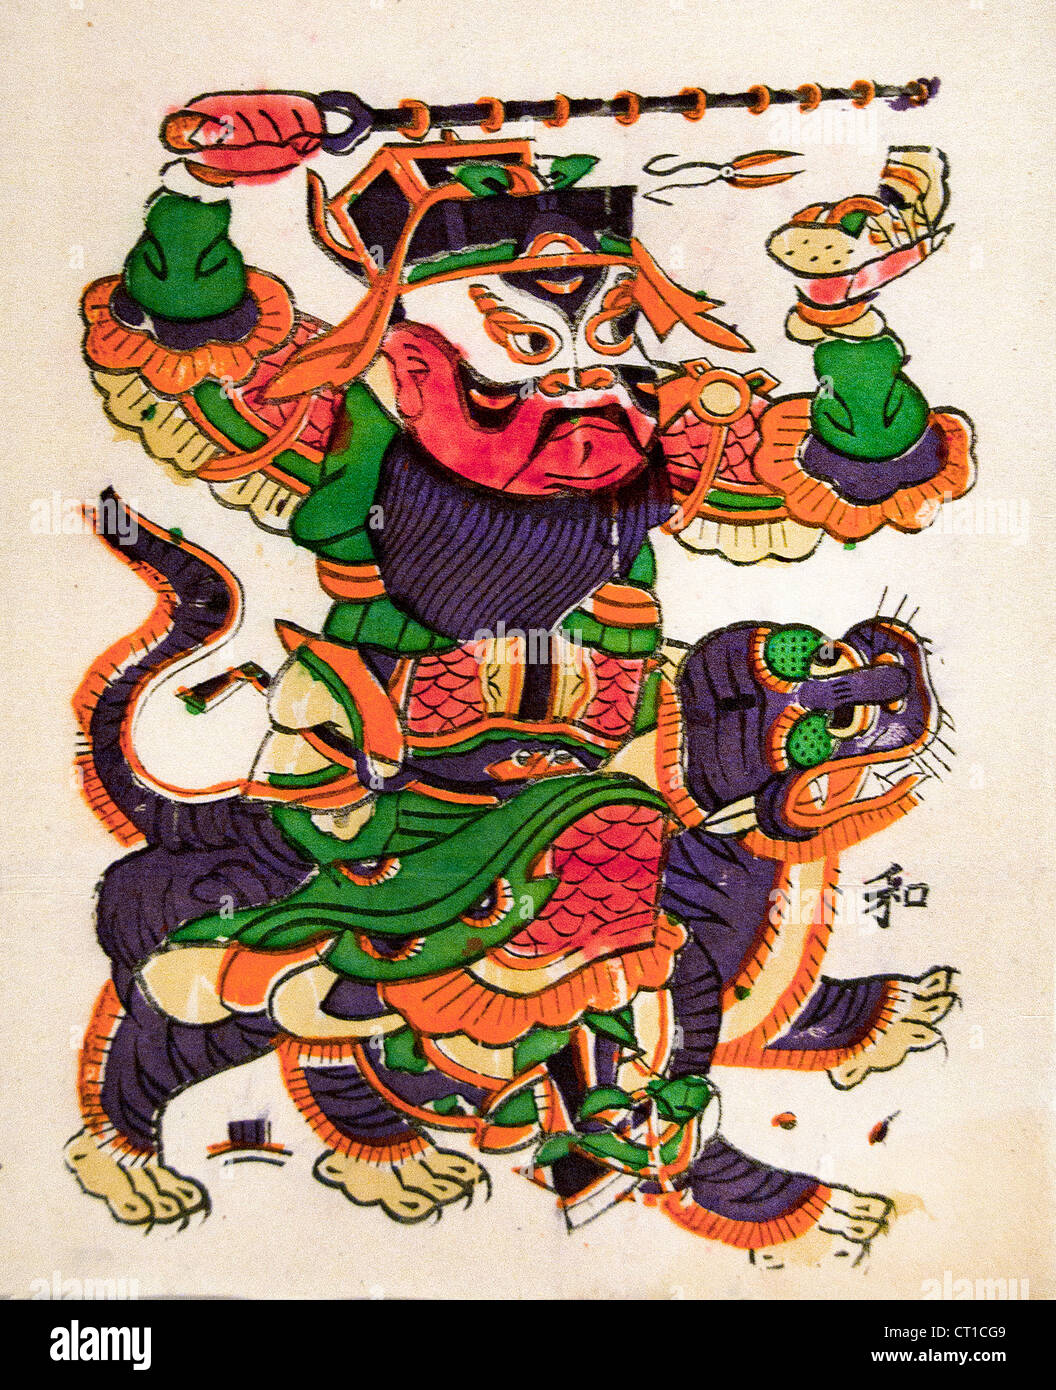 Garde côtière canadienne porte Blackwell Zhao Qing au début du 20e siècle gravure sur bois couleur sur papier Chine chinois Banque D'Images